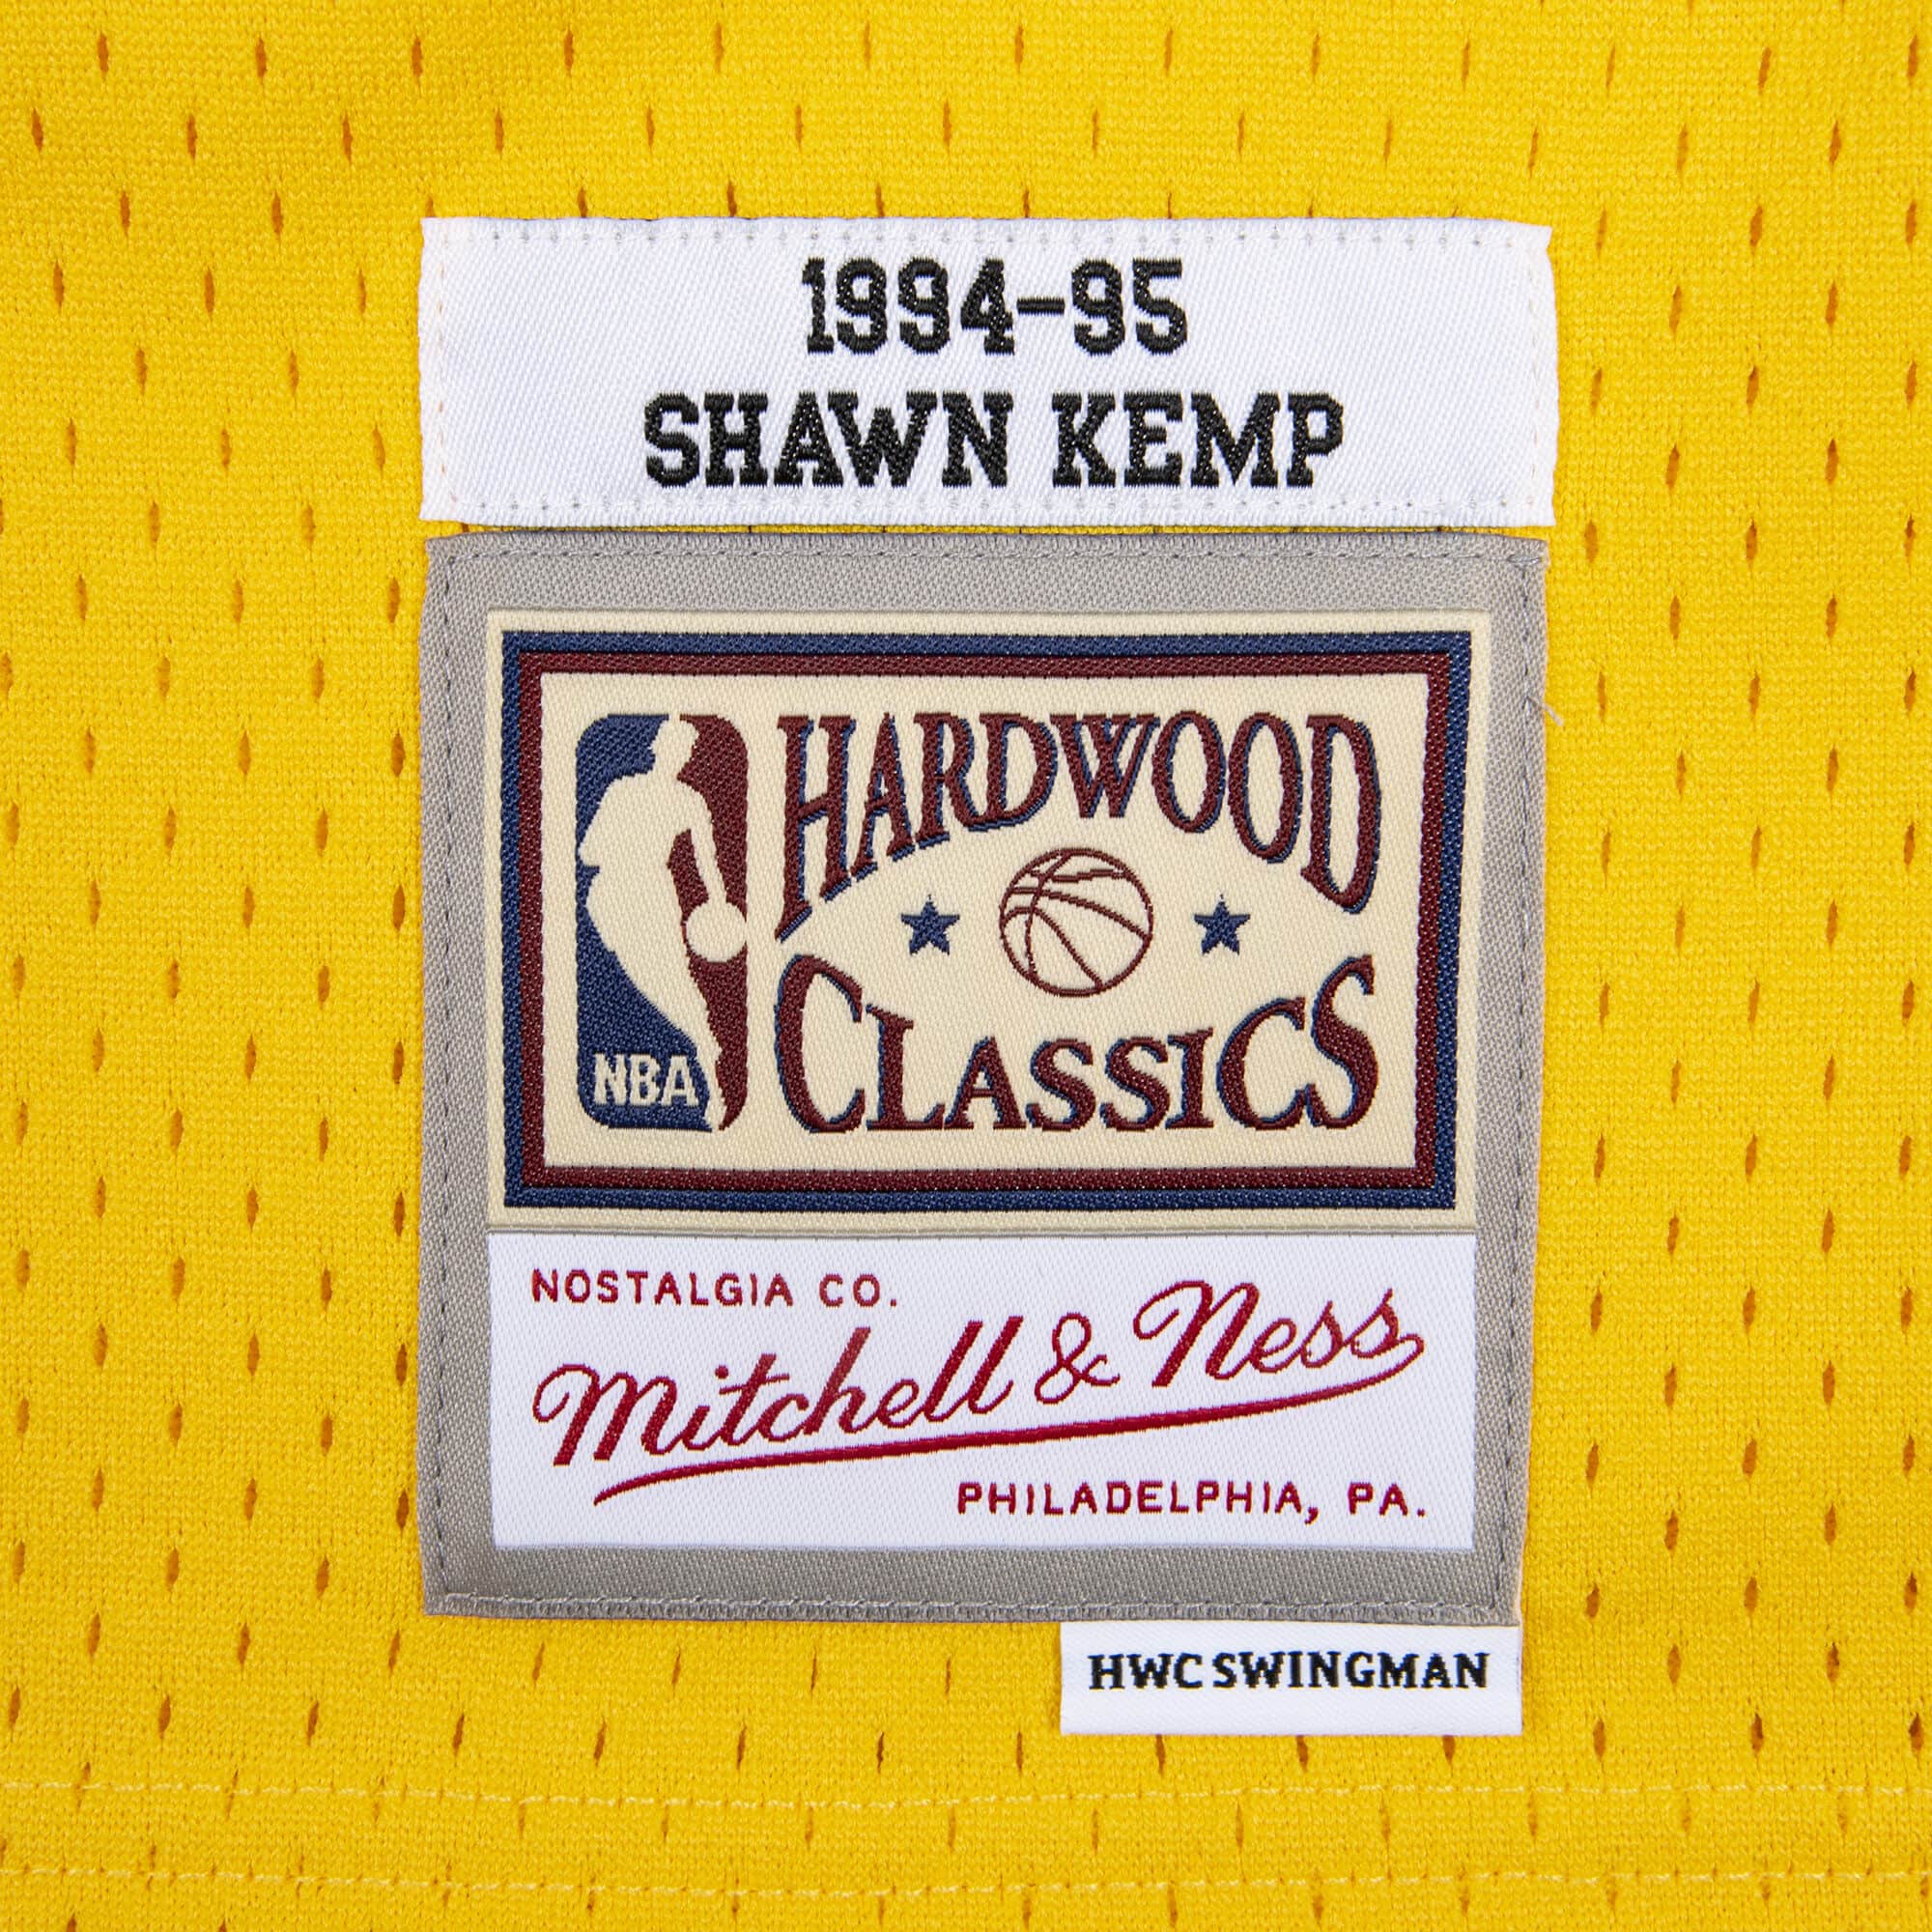 Gary Payton Seattle Supersonics Hardwood Classics Throwback NBA Swingm –  Basketball Jersey World